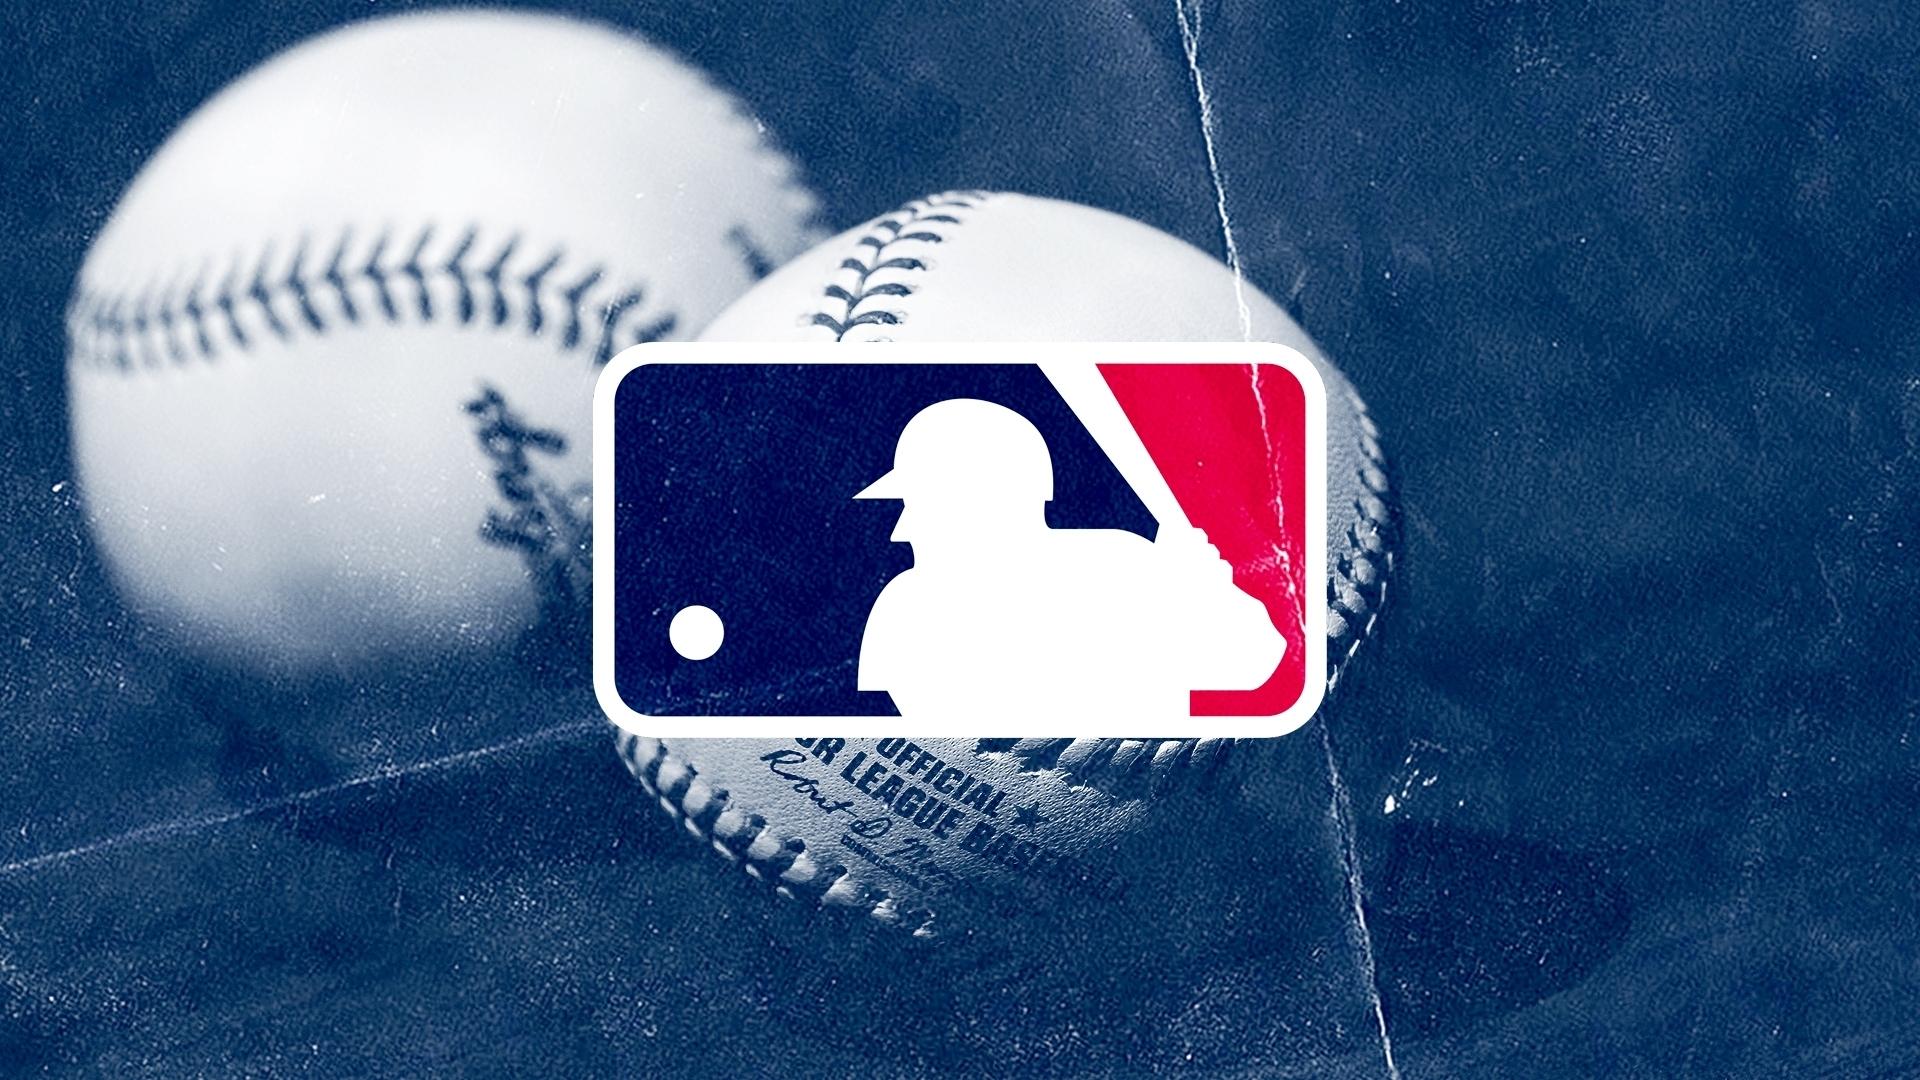 MLB / SNY Treated Image